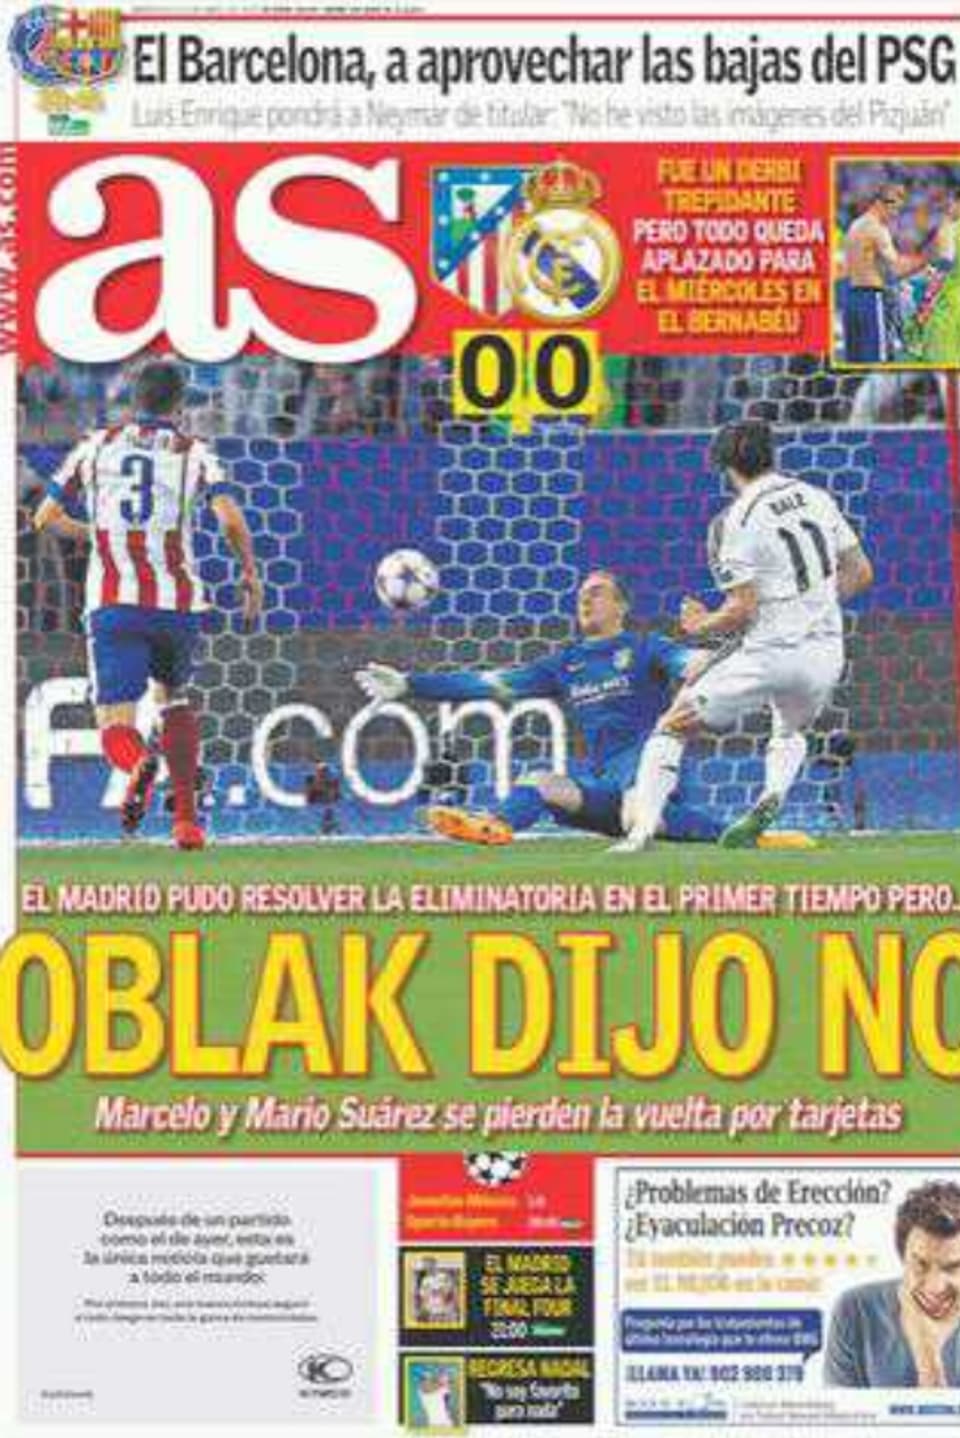 Fussball auf Titelseite einer Zeitung.